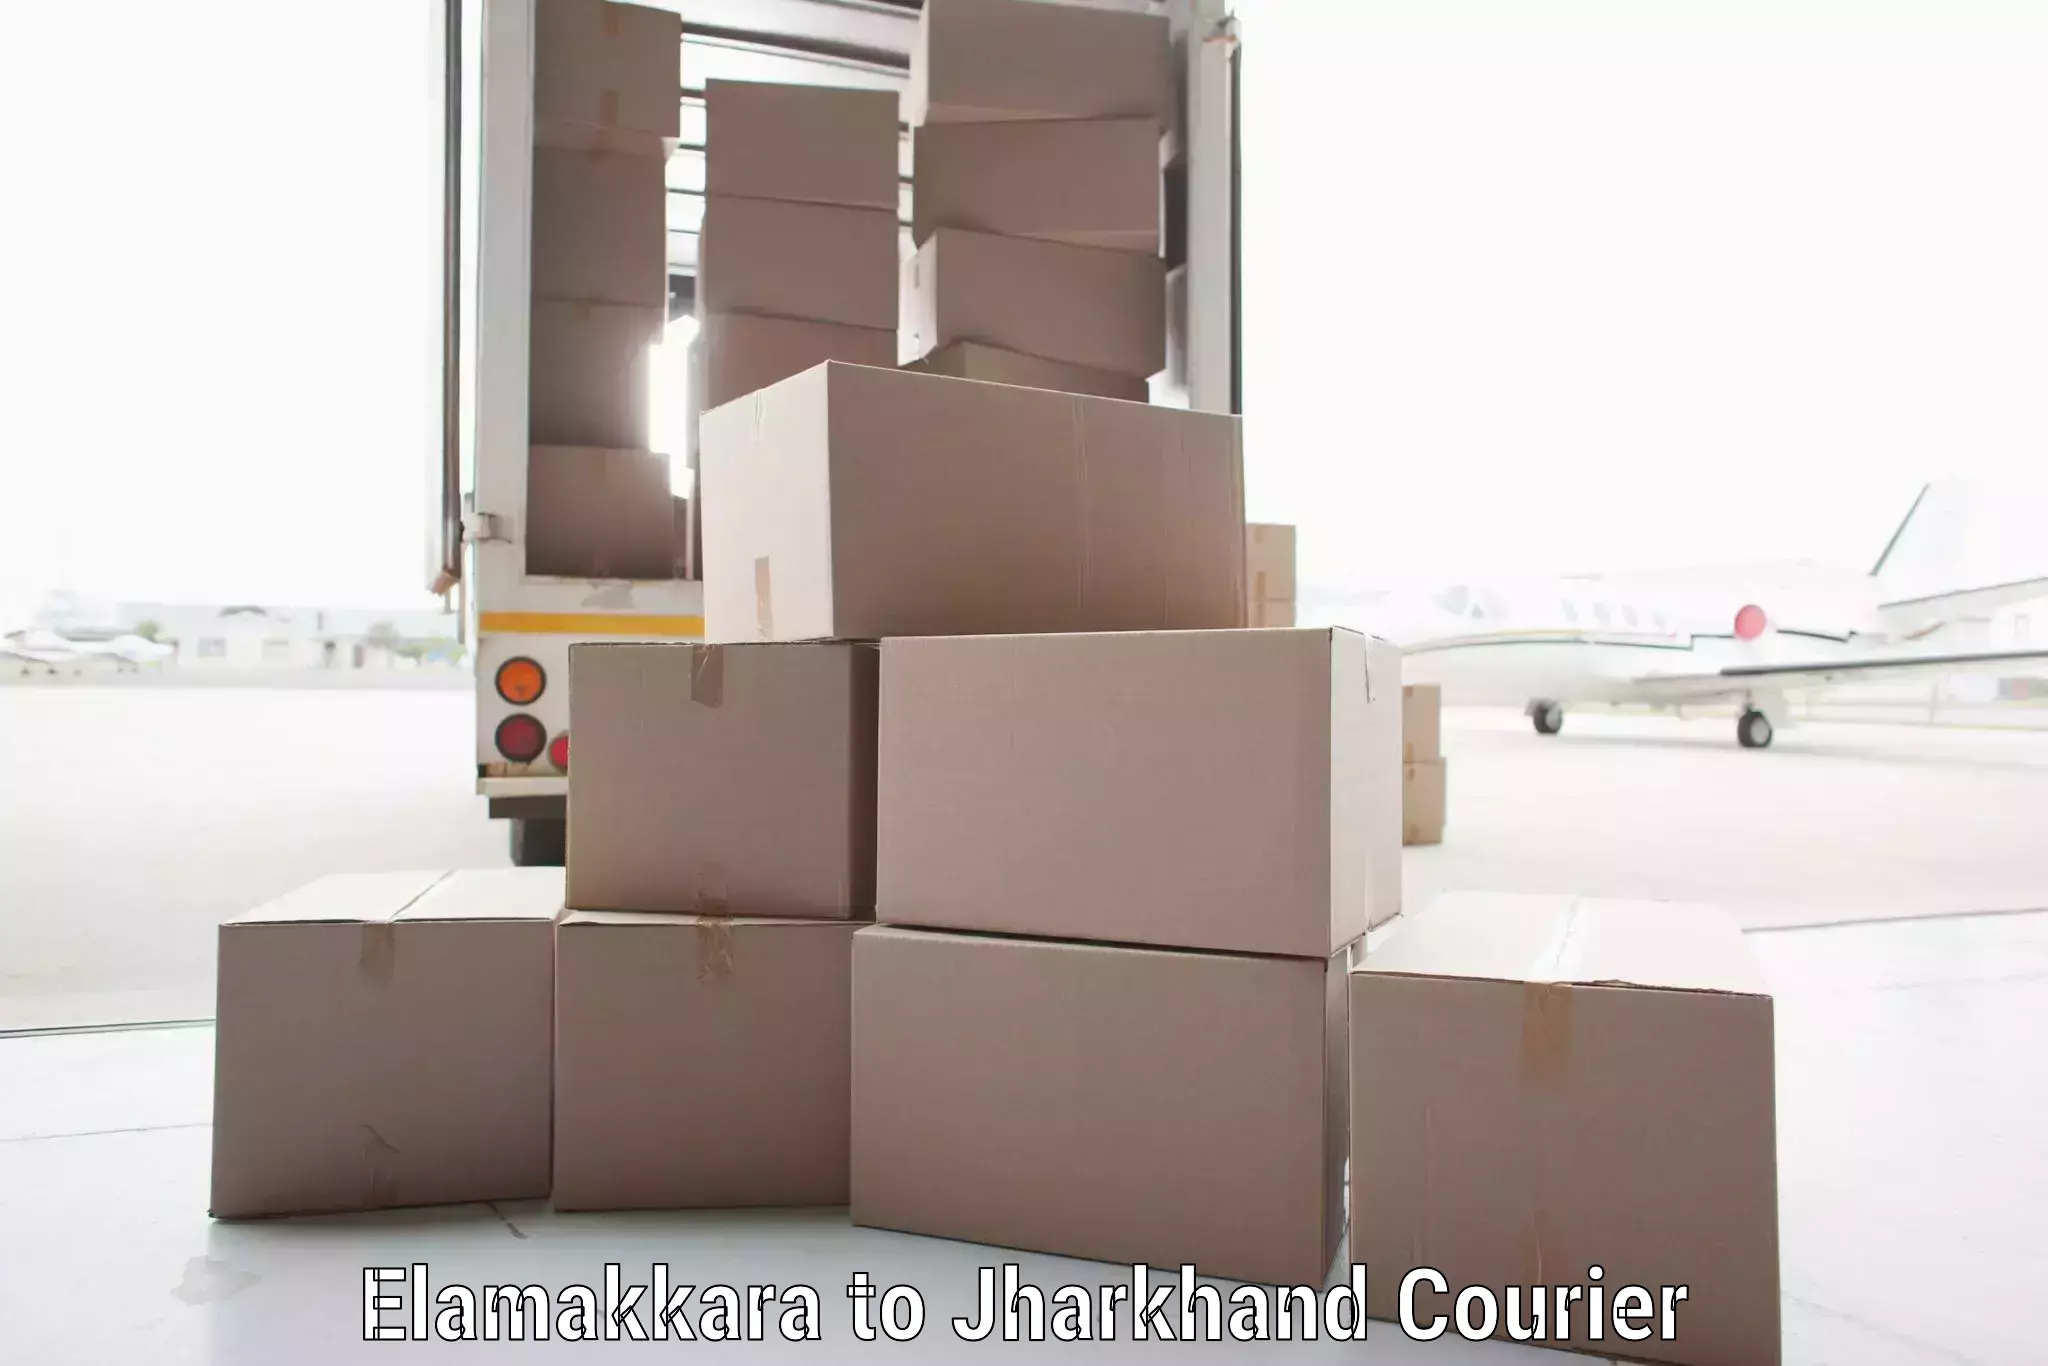 Door-to-door shipment in Elamakkara to West Singhbhum